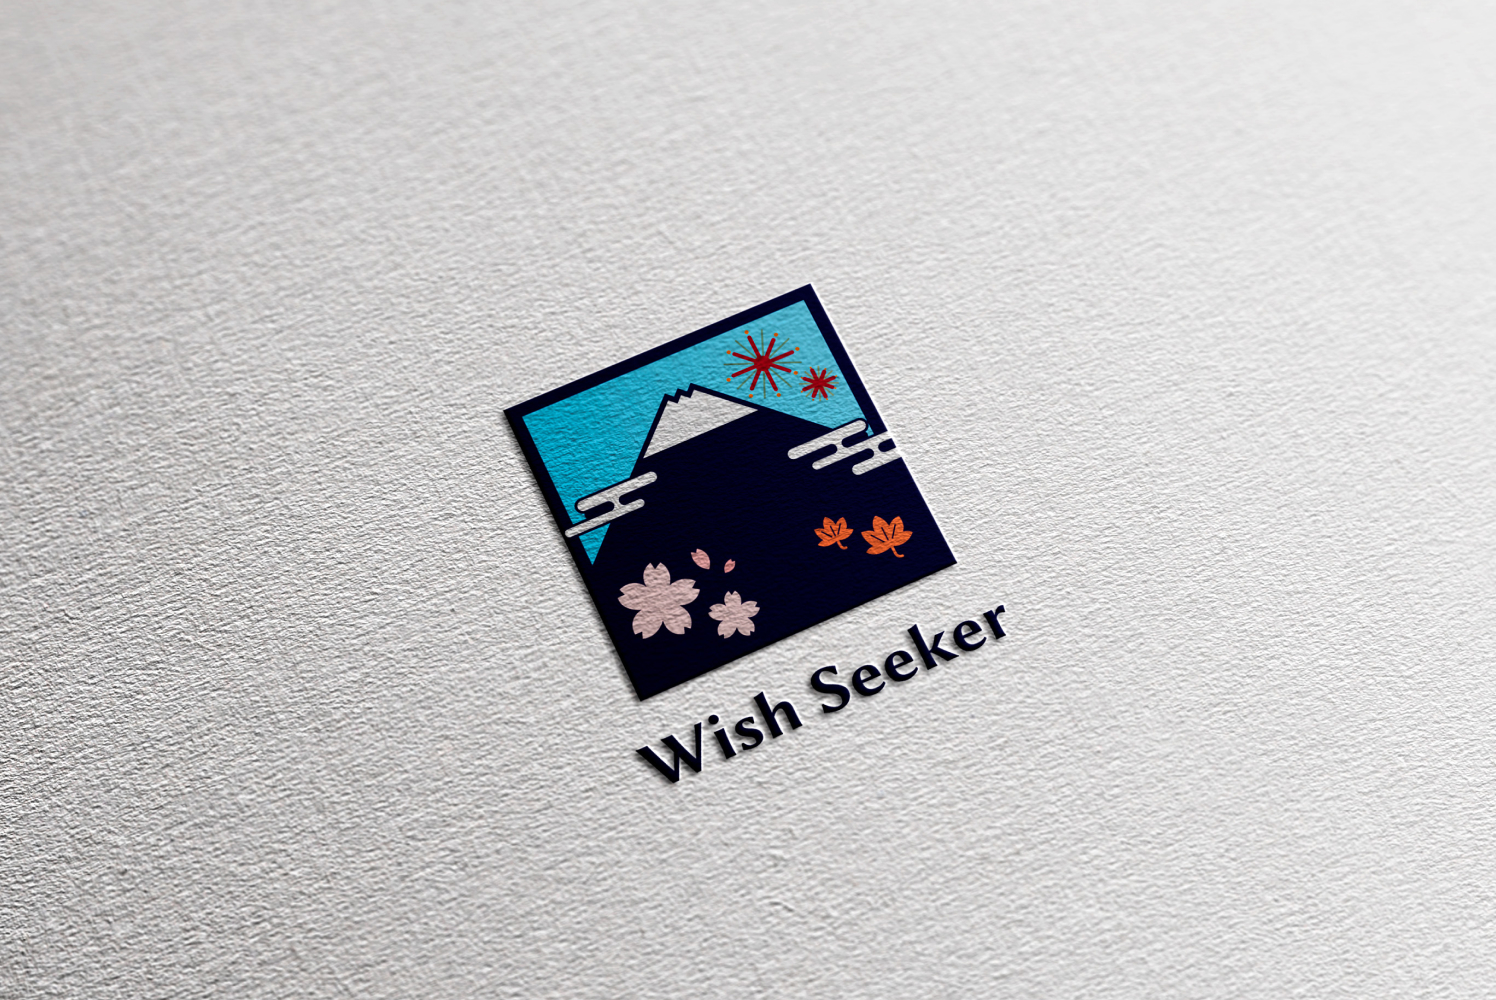 Wish seeker様のECサイトに使用するブランドロゴ画像